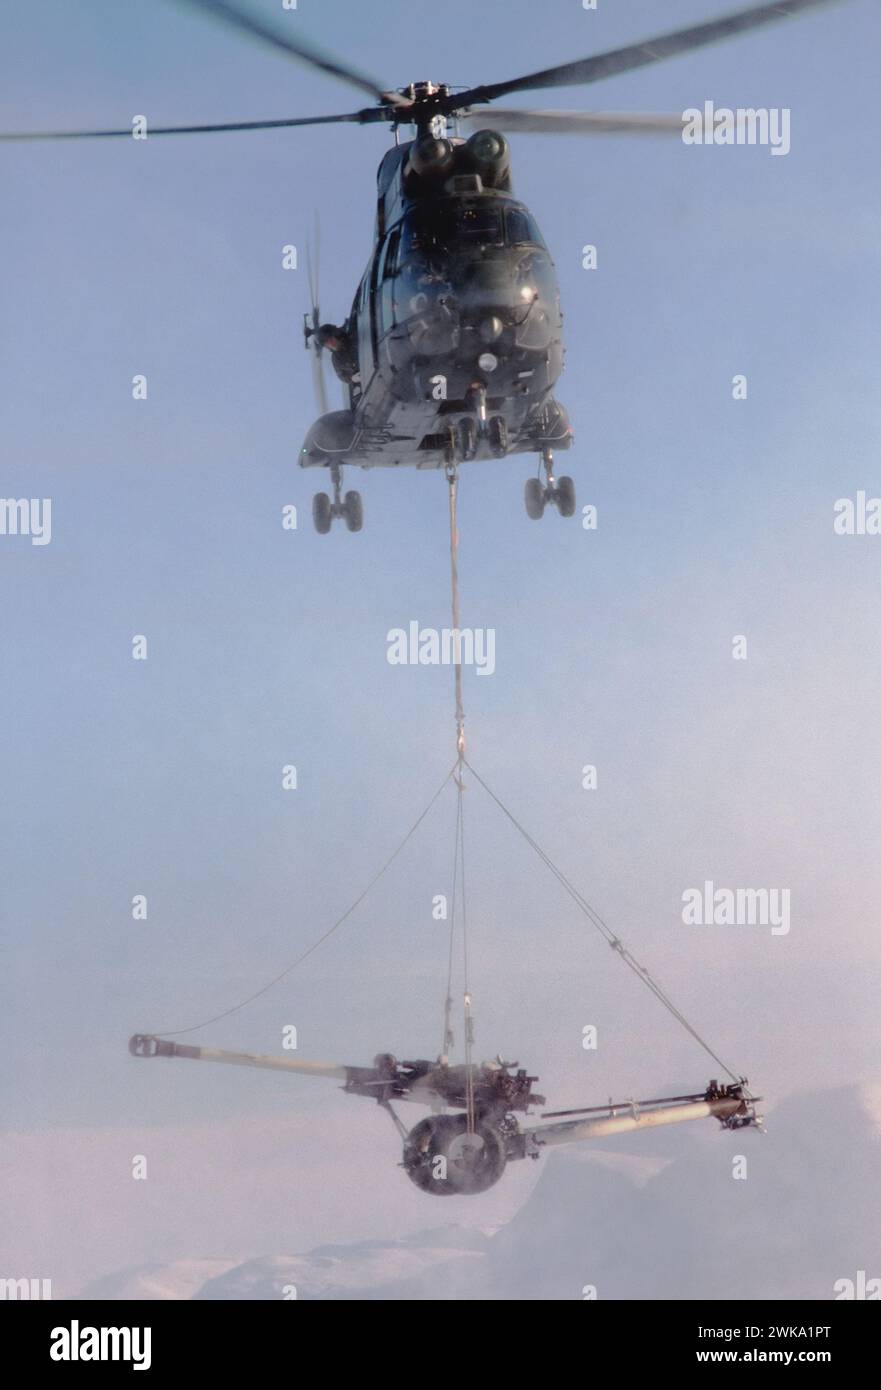 - Royal Air Force, un hélicoptère Westland Puma transporte une pièce d'artillerie pendant les exercices de l'OTAN en Norvège - Royal Air Force, un elicottero Westland Puma trasporta un pezzo di artiglieria durante esercitazioni NATO in Norvegia Banque D'Images